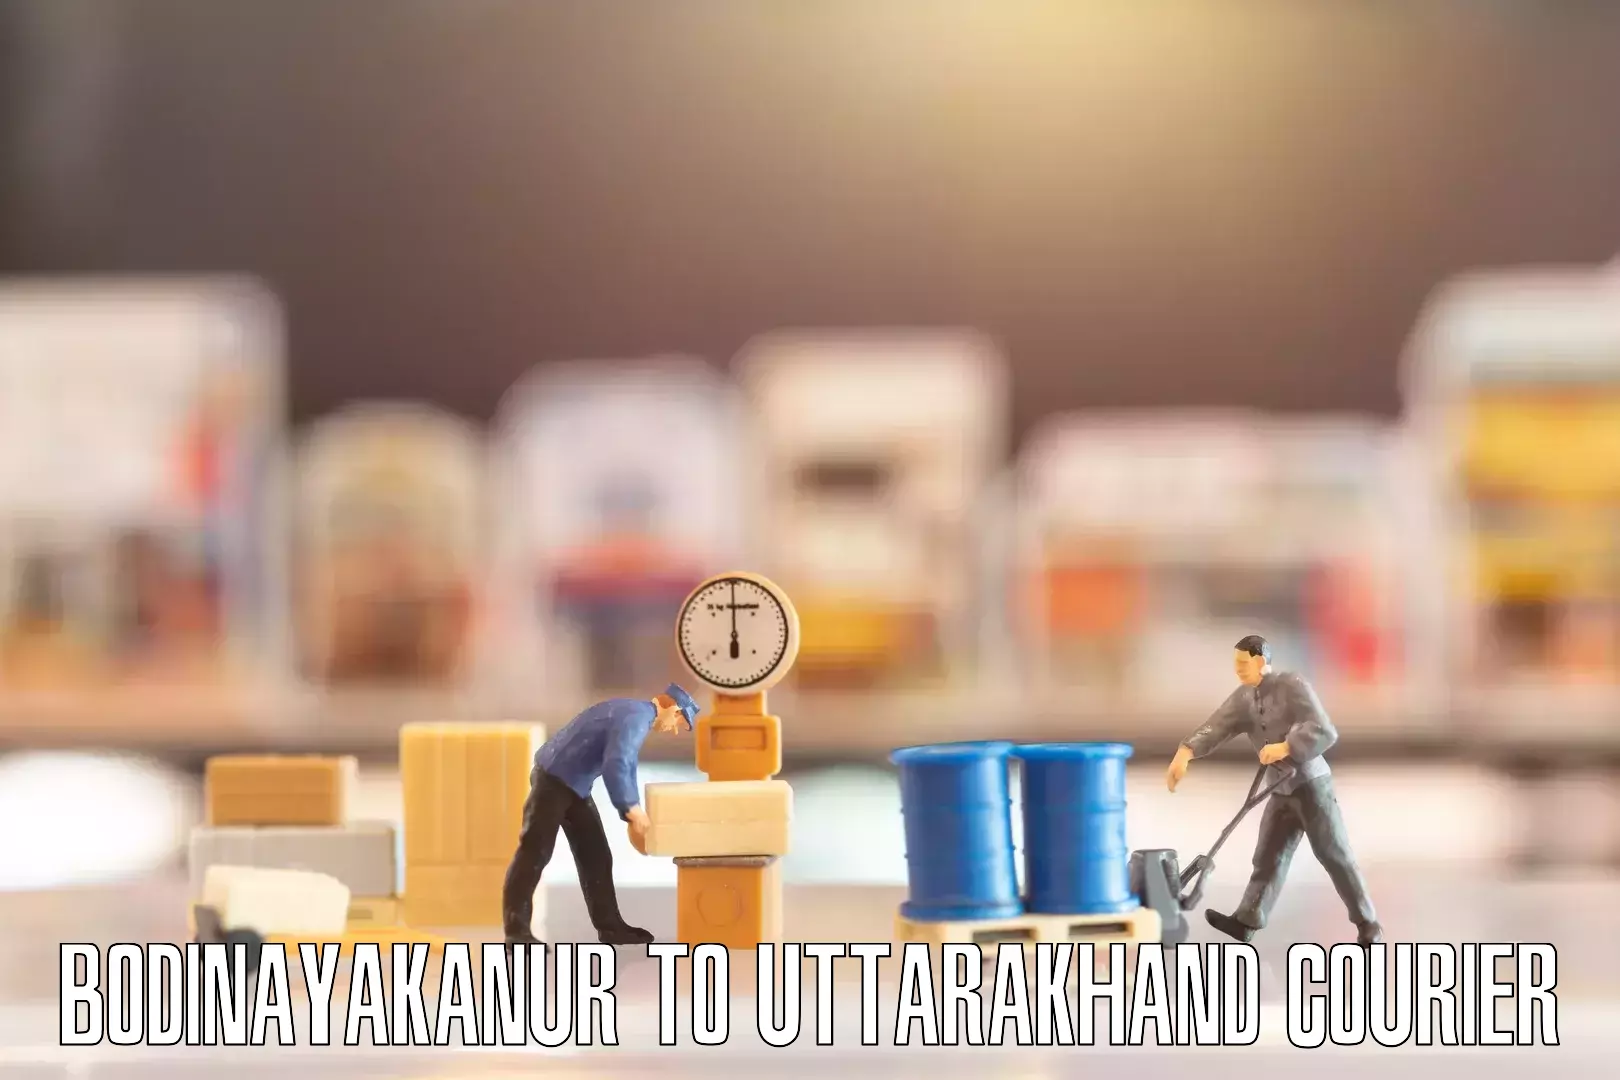 Furniture moving assistance Bodinayakanur to Uttarakhand